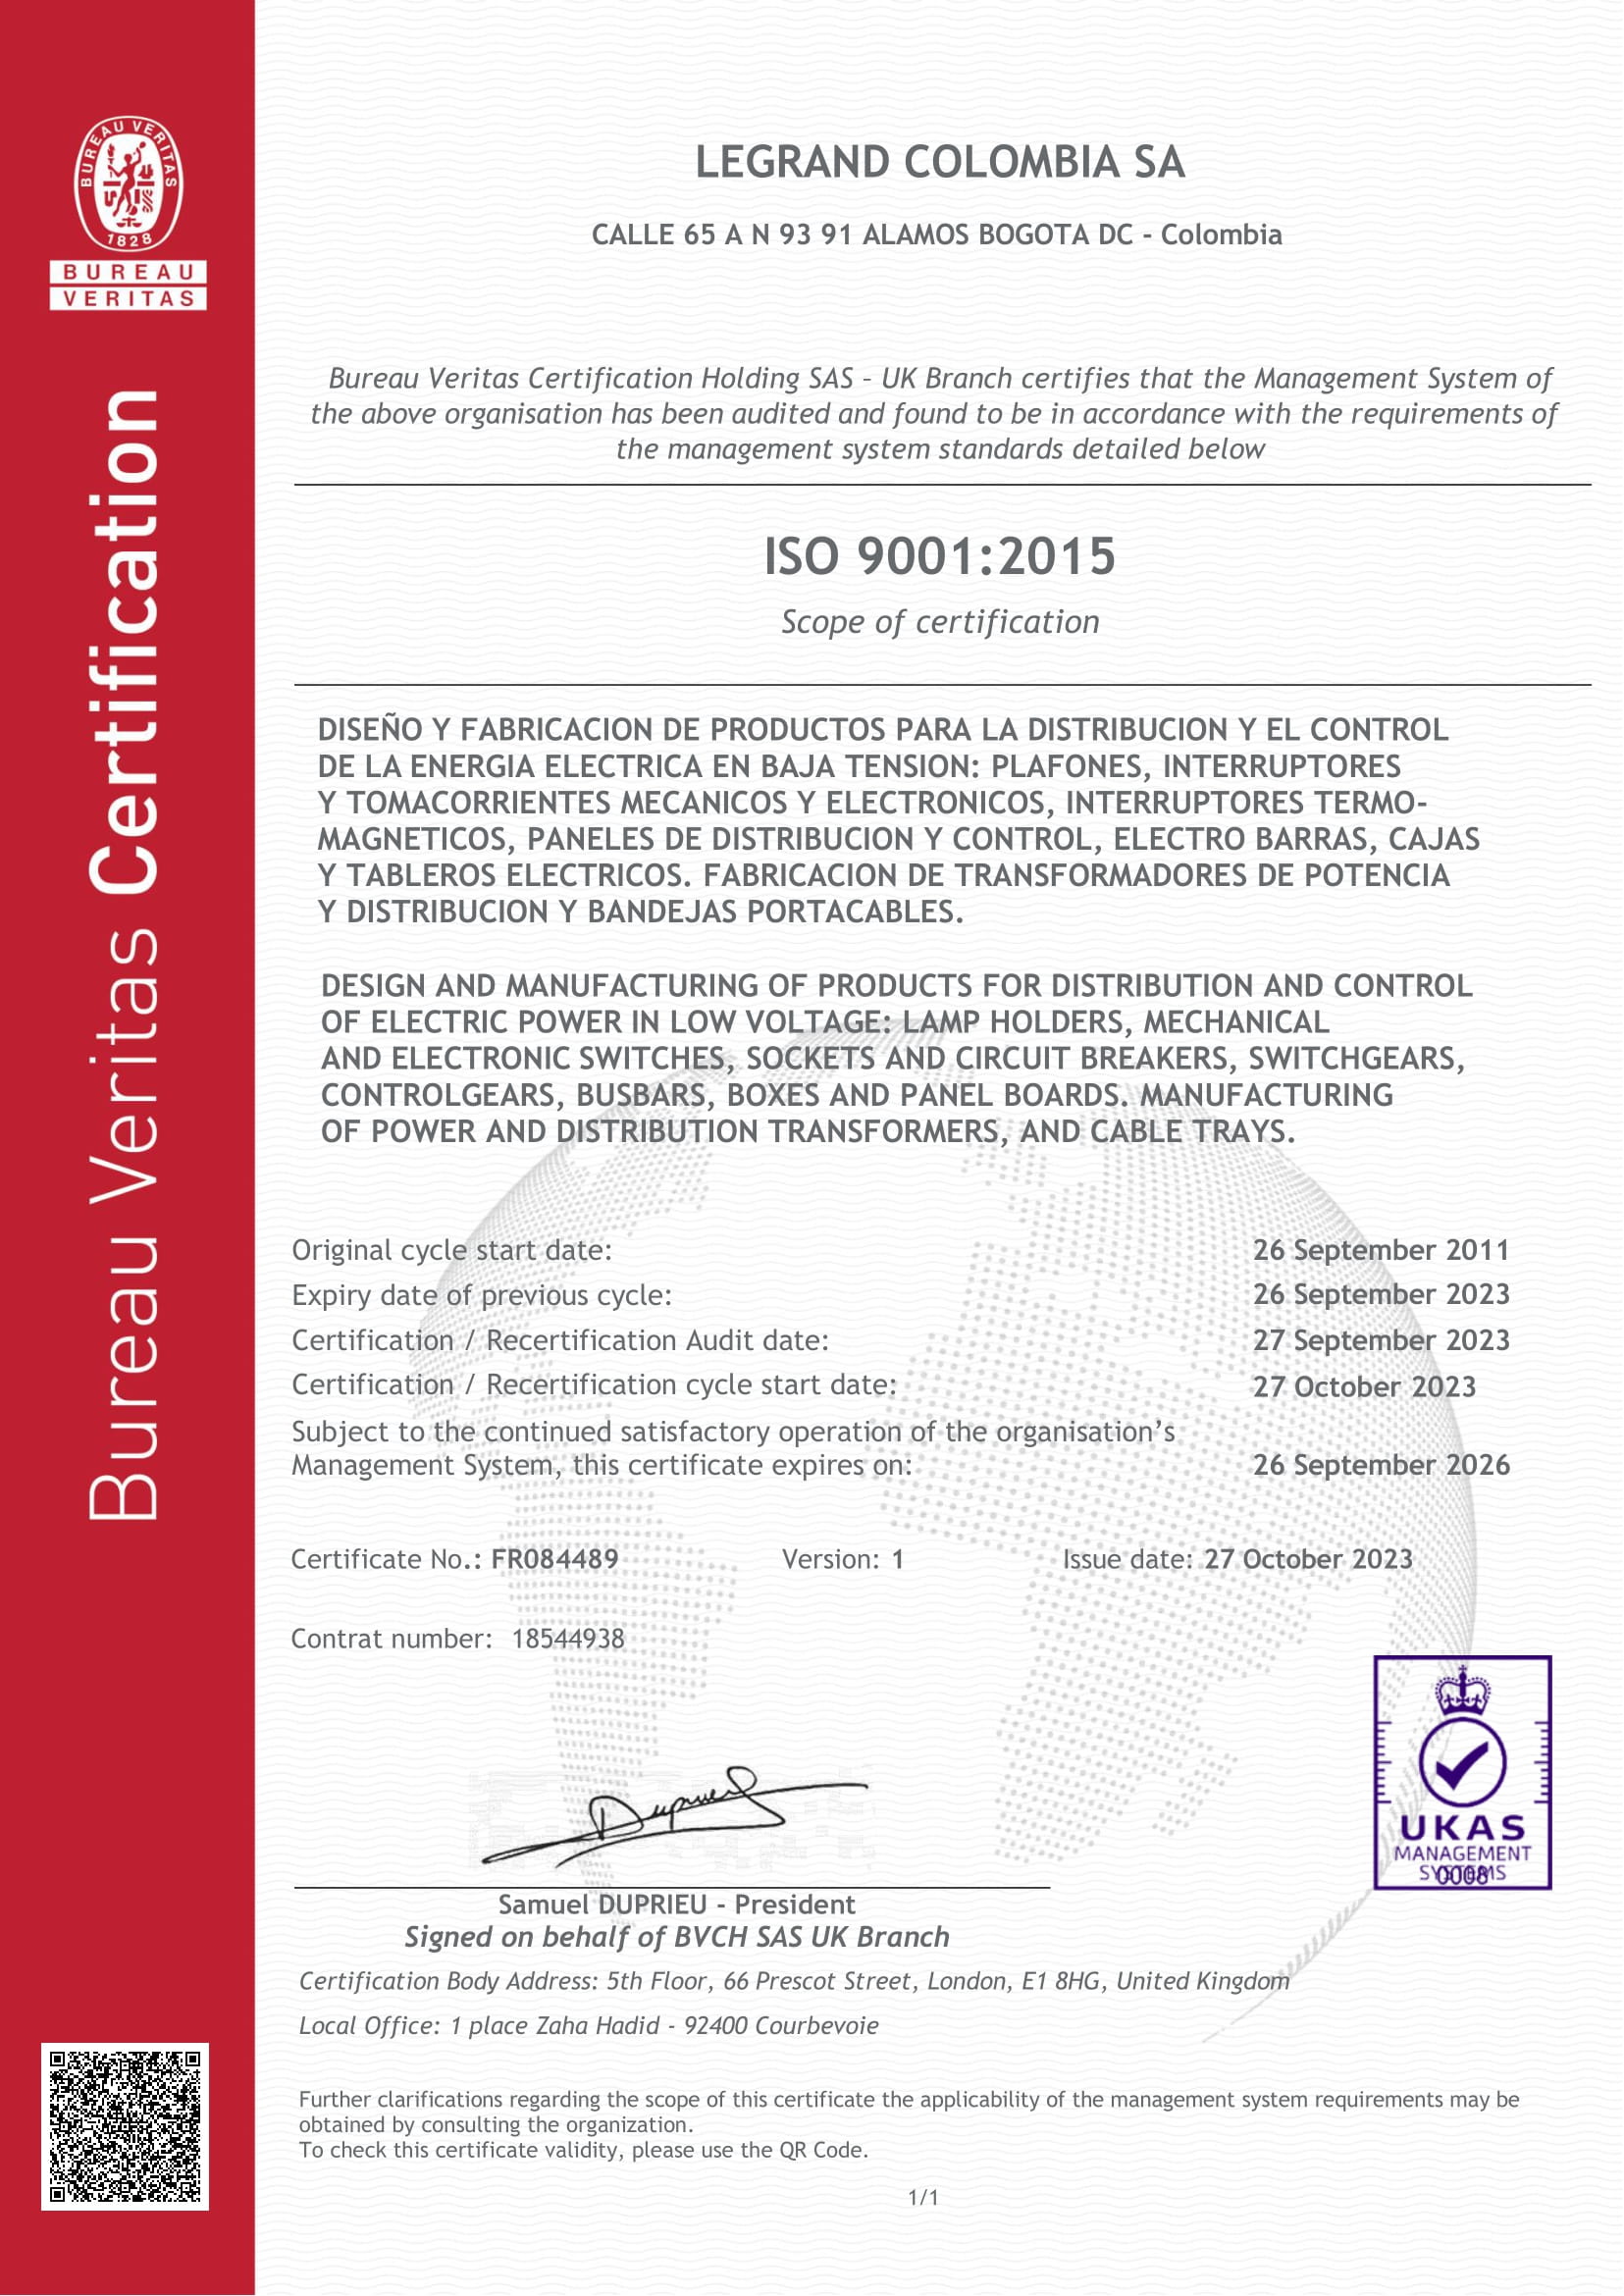 Sistema de Gestión de Calidad ISO 9001:2015